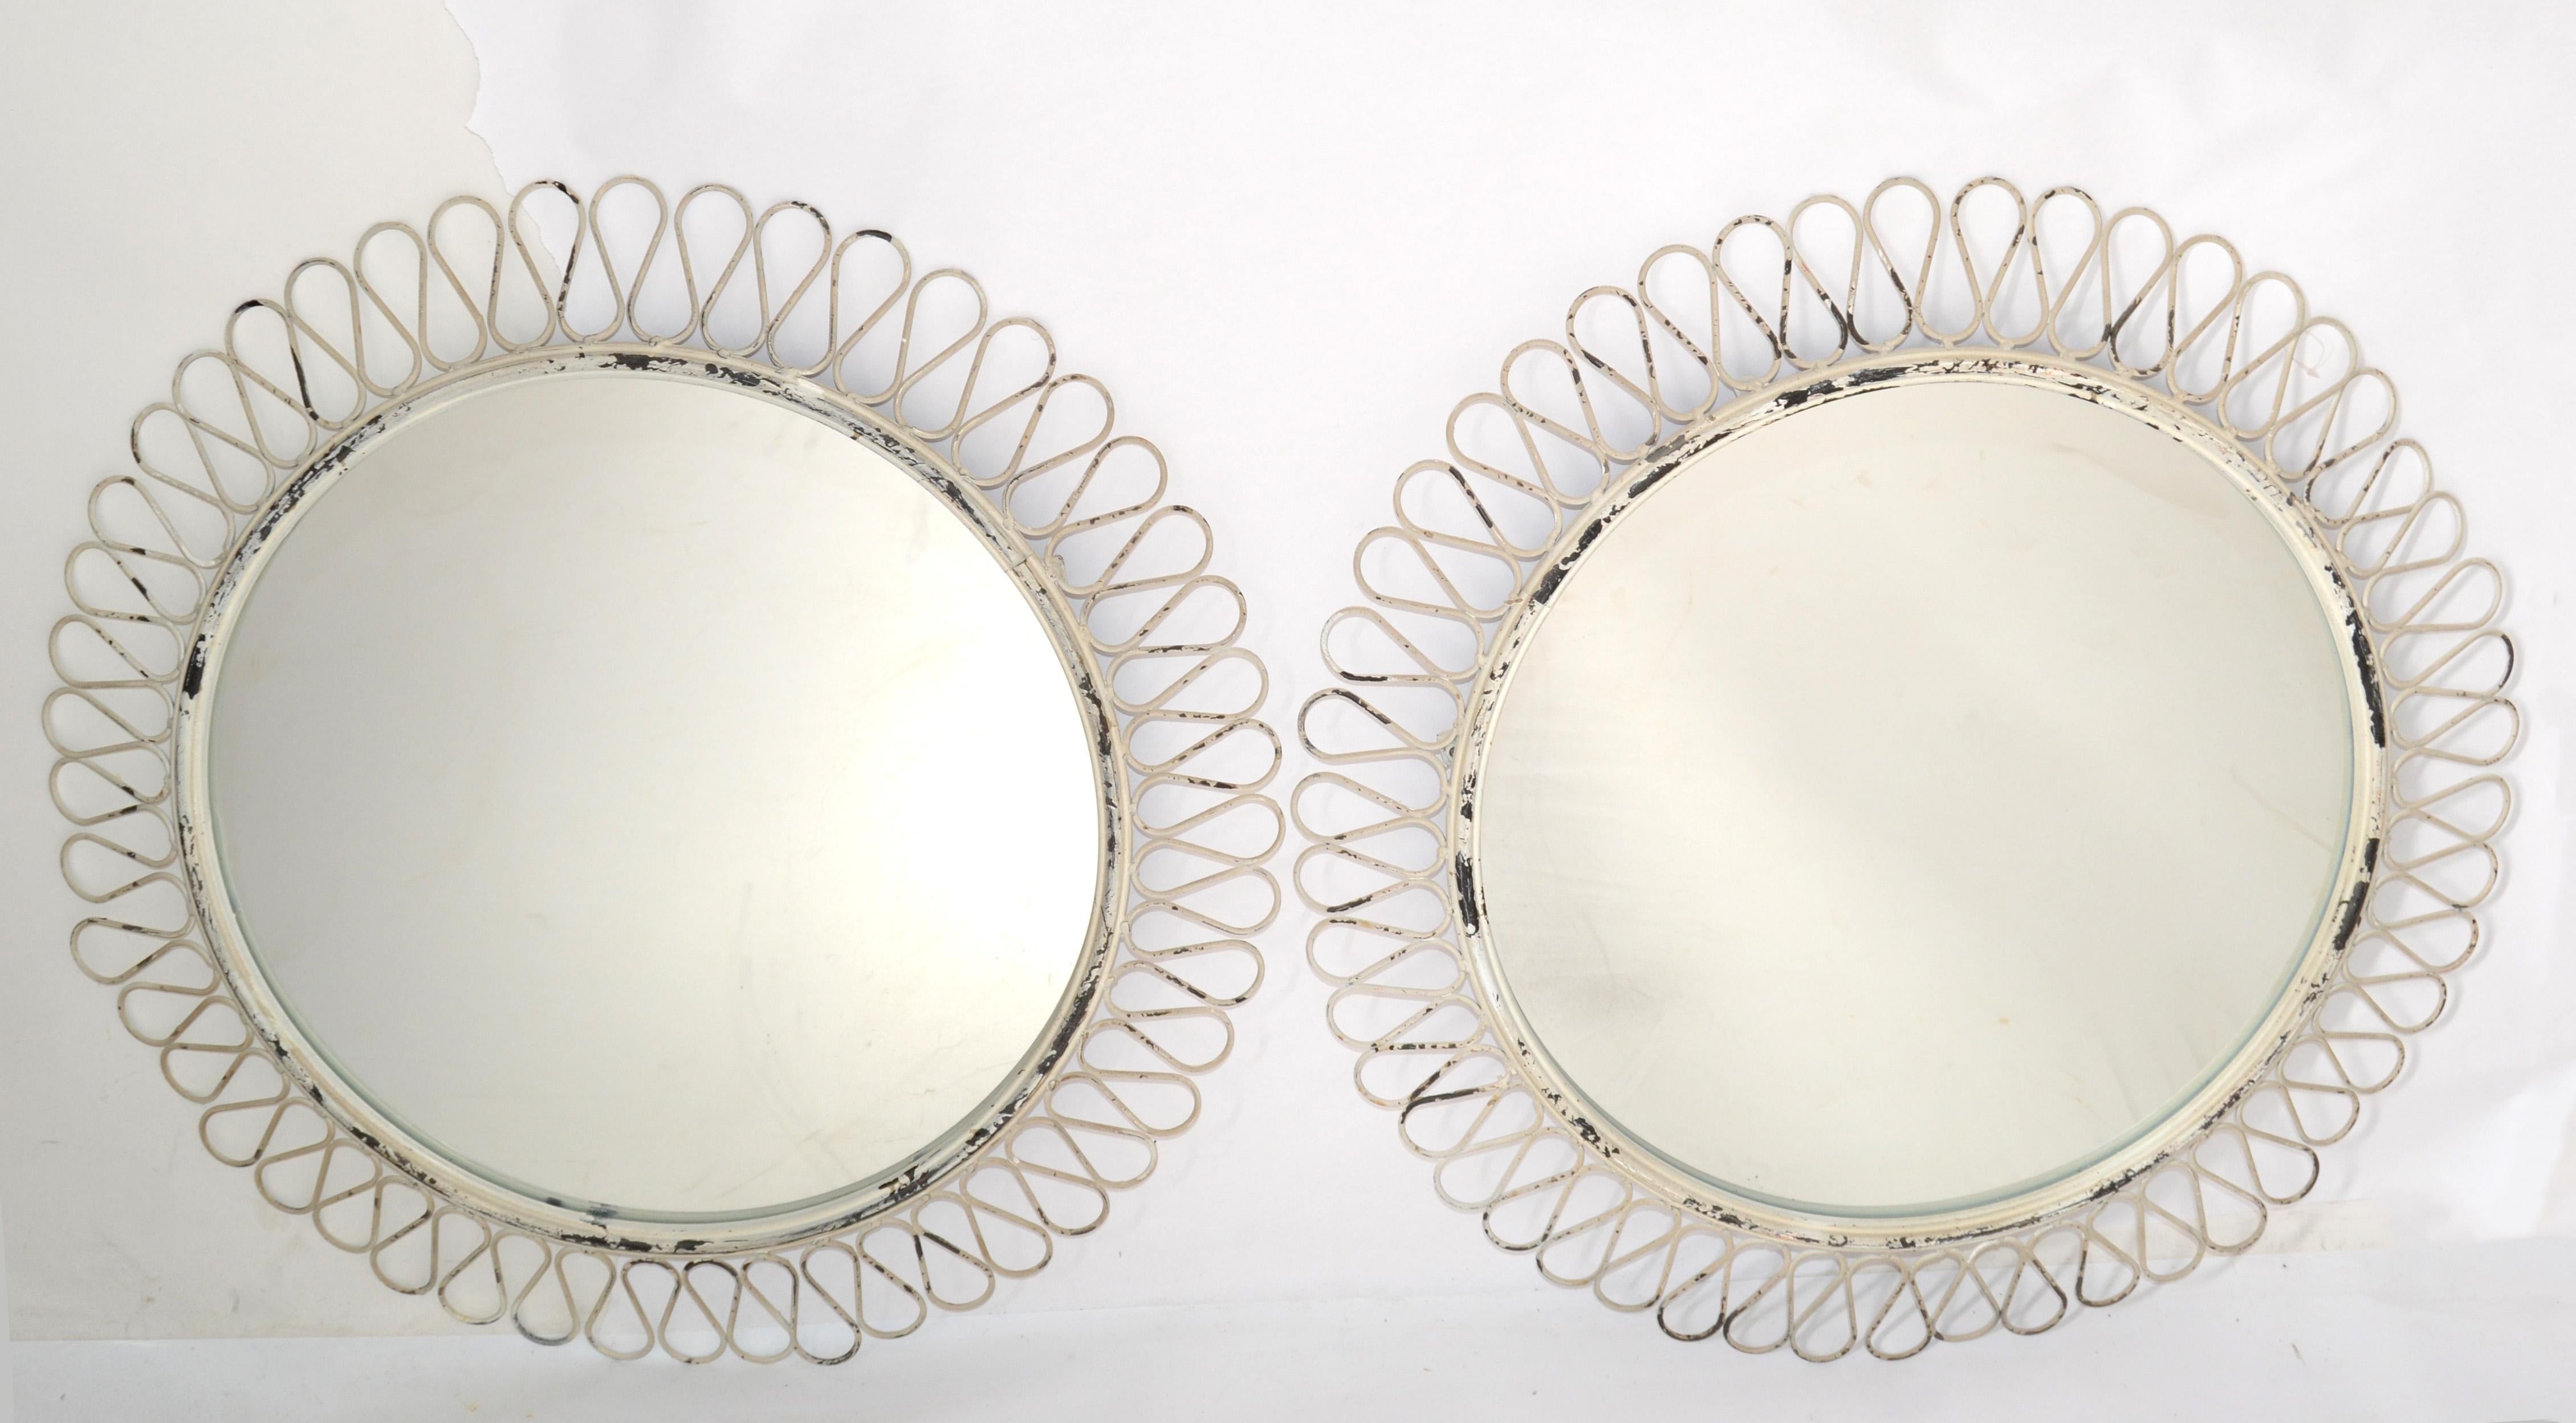 Paar der 1950er Jahre Französisch notleidenden Vintage aus weißem Schmiedeeisen Wandspiegel oder Konsole Spiegel Art Deco-Stil.
Handgefertigte schmiedeeiserne Umrandung des runden Spiegels.
Sichere Aufhängekonstruktion auf der